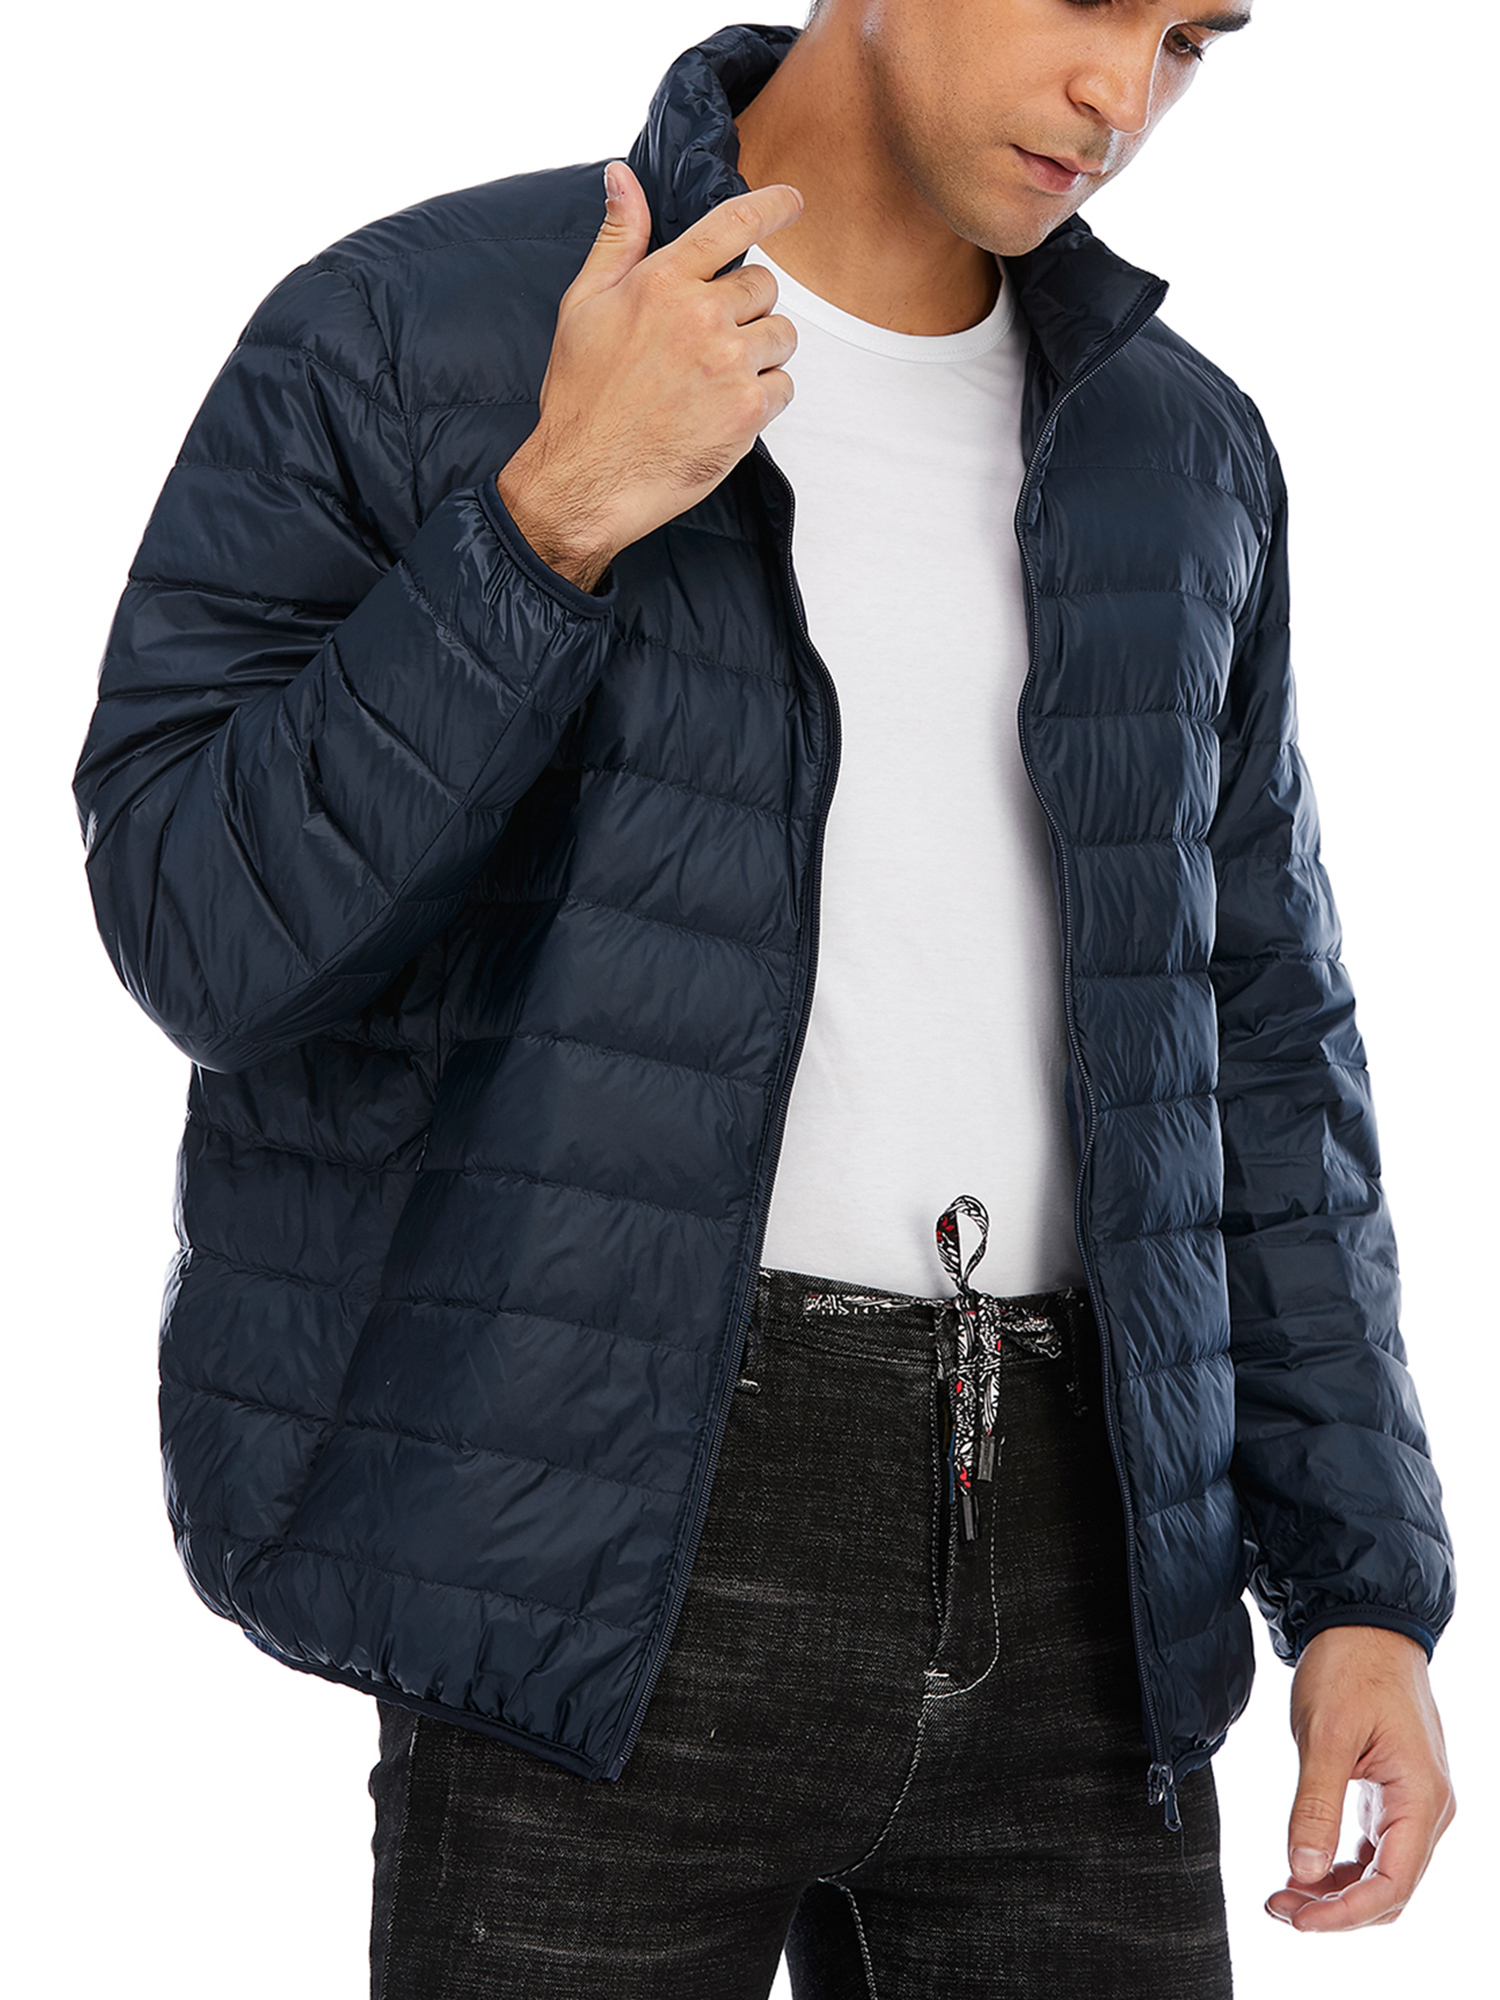 Surplus Men/'s Big Tall Puffer Winter Coat Ski Jacket Blue *Size XLT NEW!